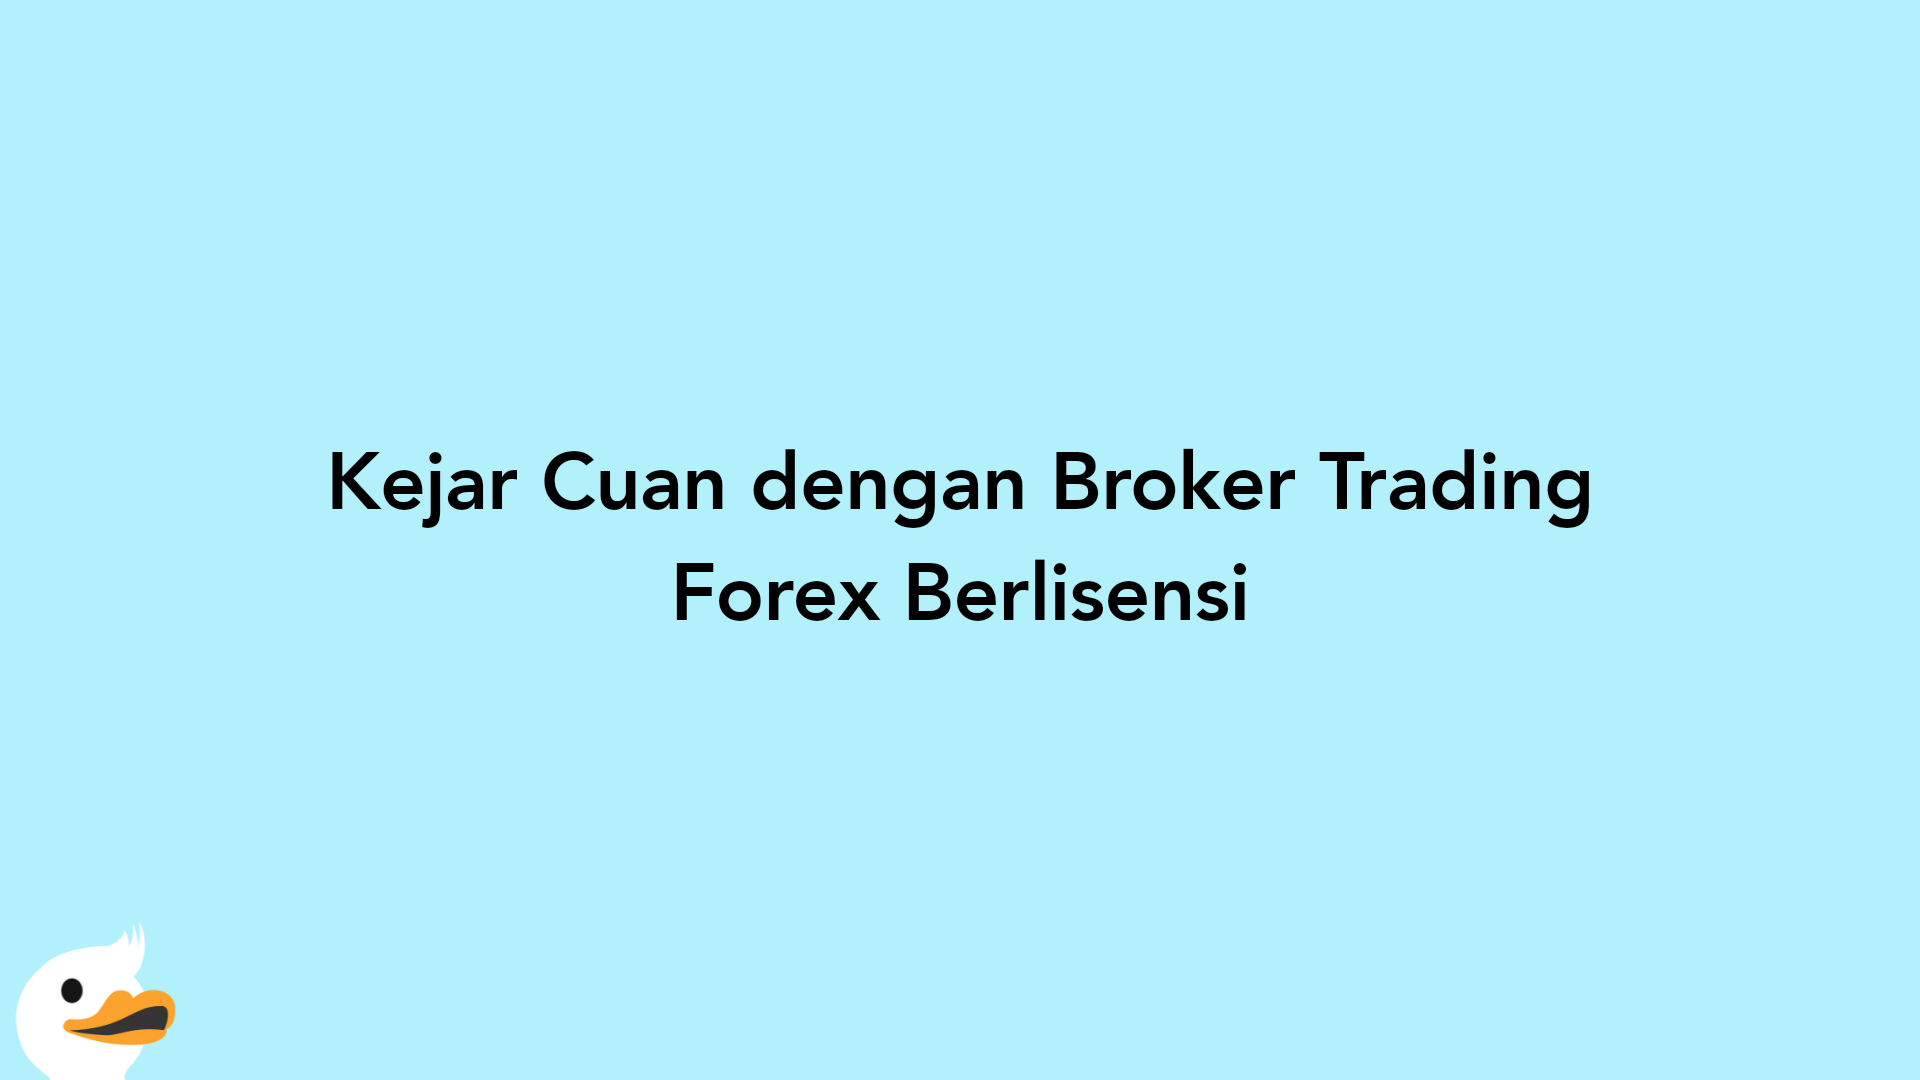 Kejar Cuan dengan Broker Trading Forex Berlisensi